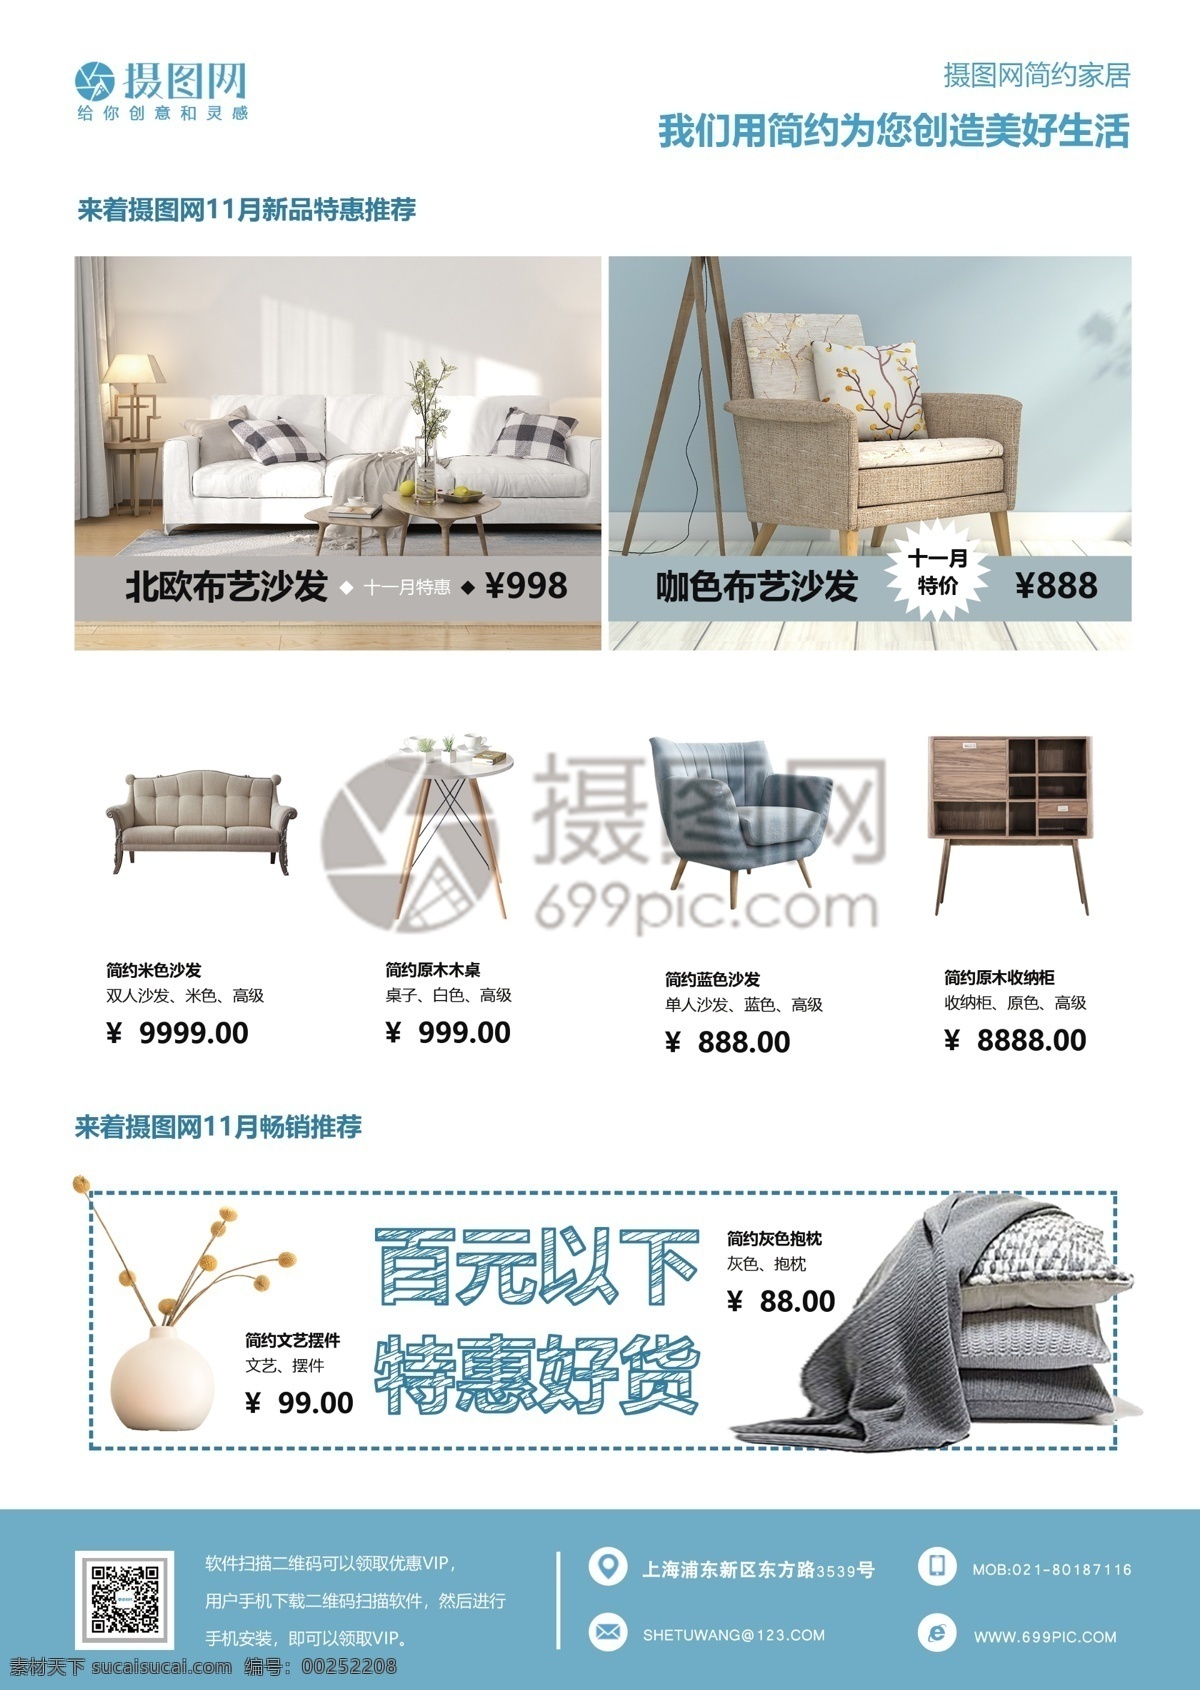 家居 促销 宣传单 双11 双十一 蓝色 宣传 沙发 软装设计 装修 简约 简洁硬装 环境 北欧家装 家具 室内设计 传单